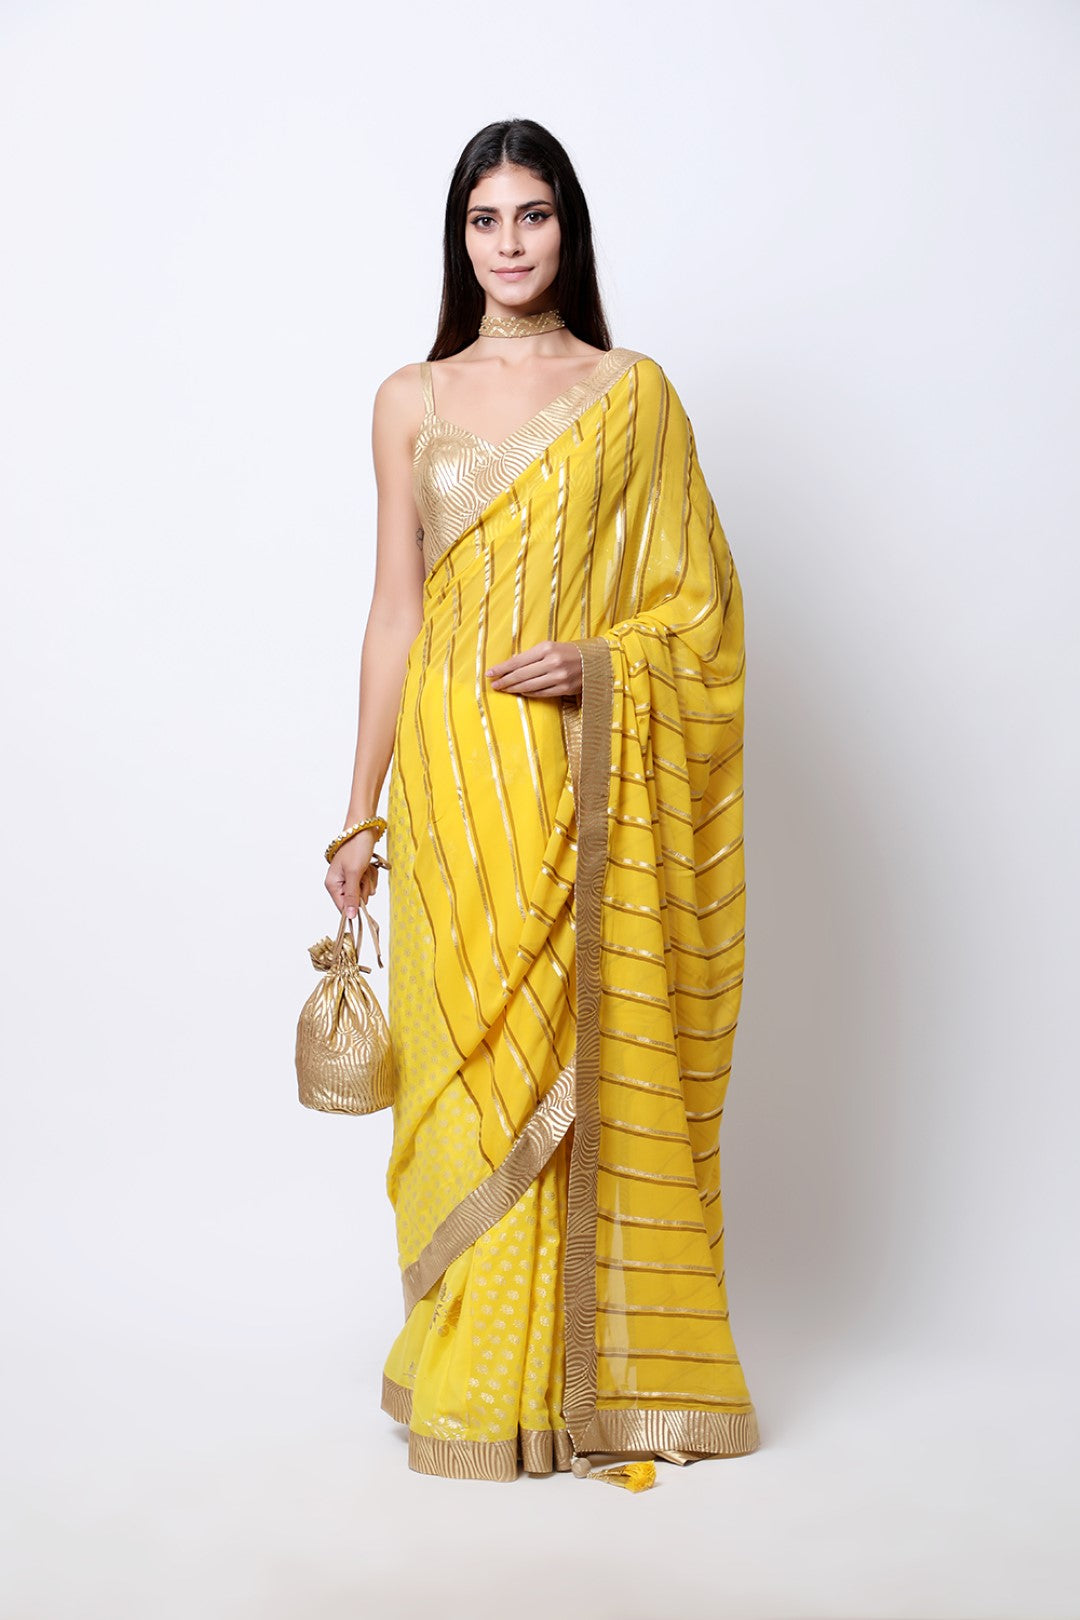 Pitambari Yellow leheriya crepe palla with jaipuri guldasta pleated saree , paired with tabacco swirl strap blouse.